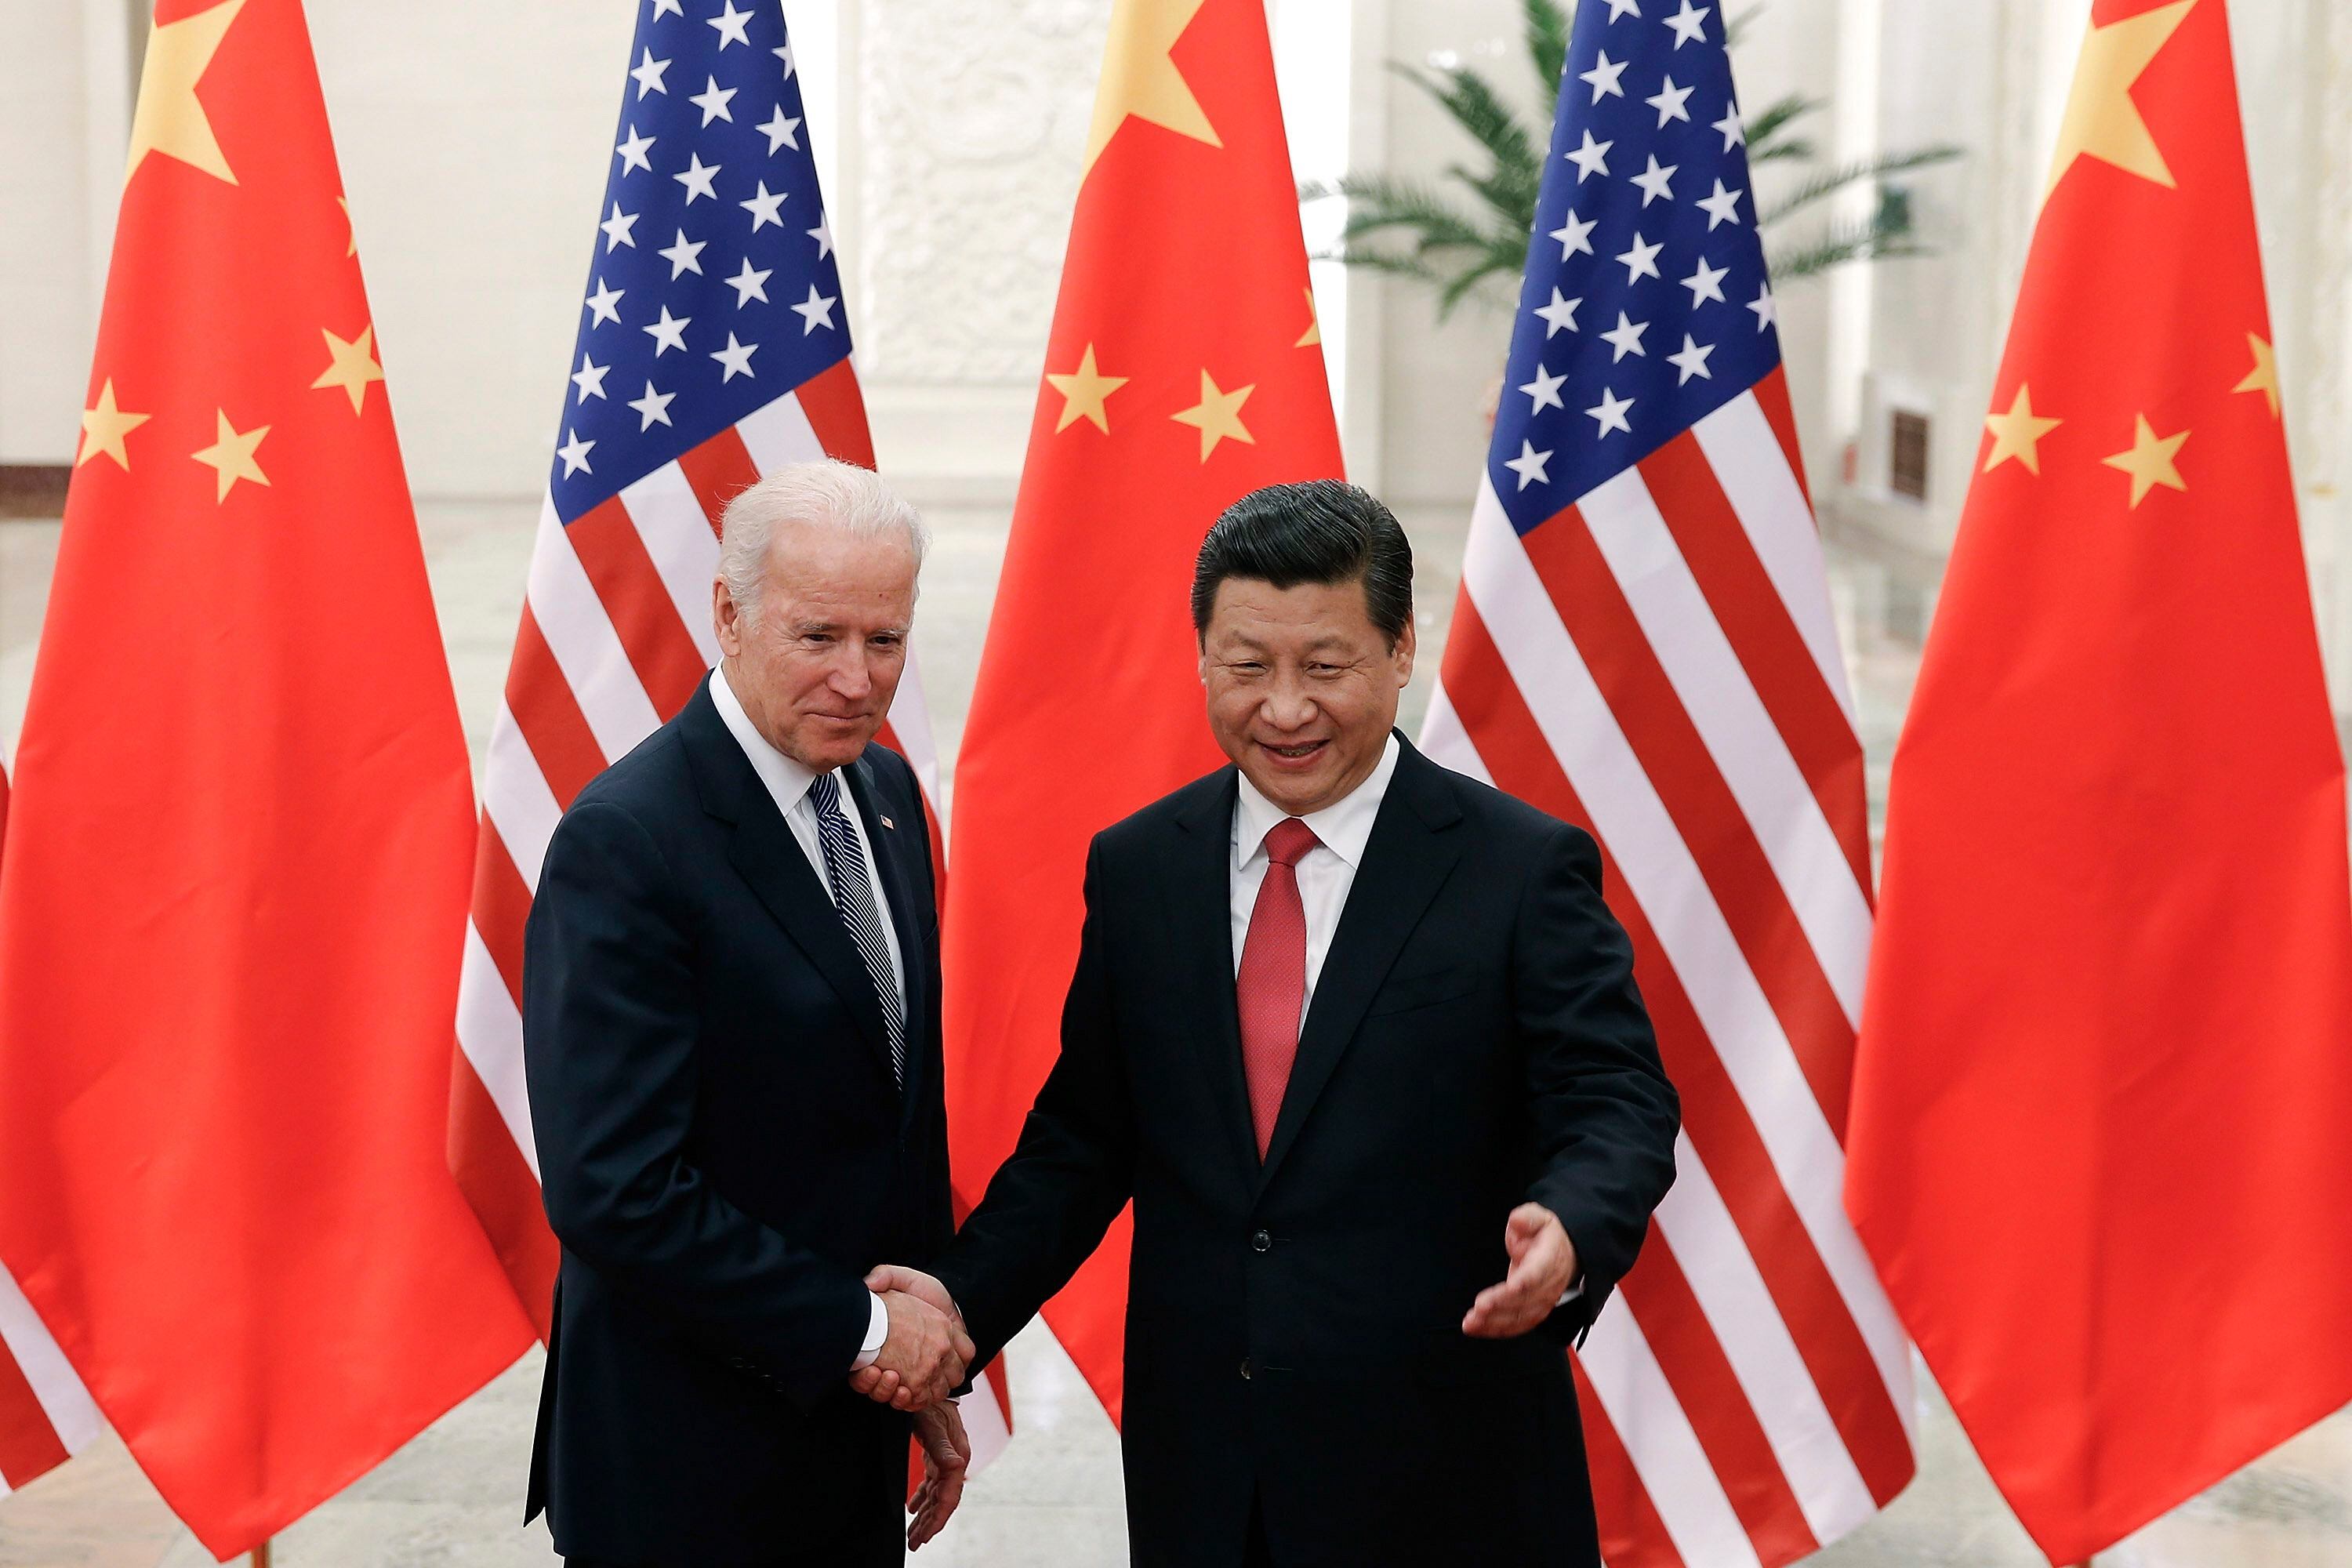 Reunión de Biden y Xi Jinping este lunes: ¿Qué esperar?